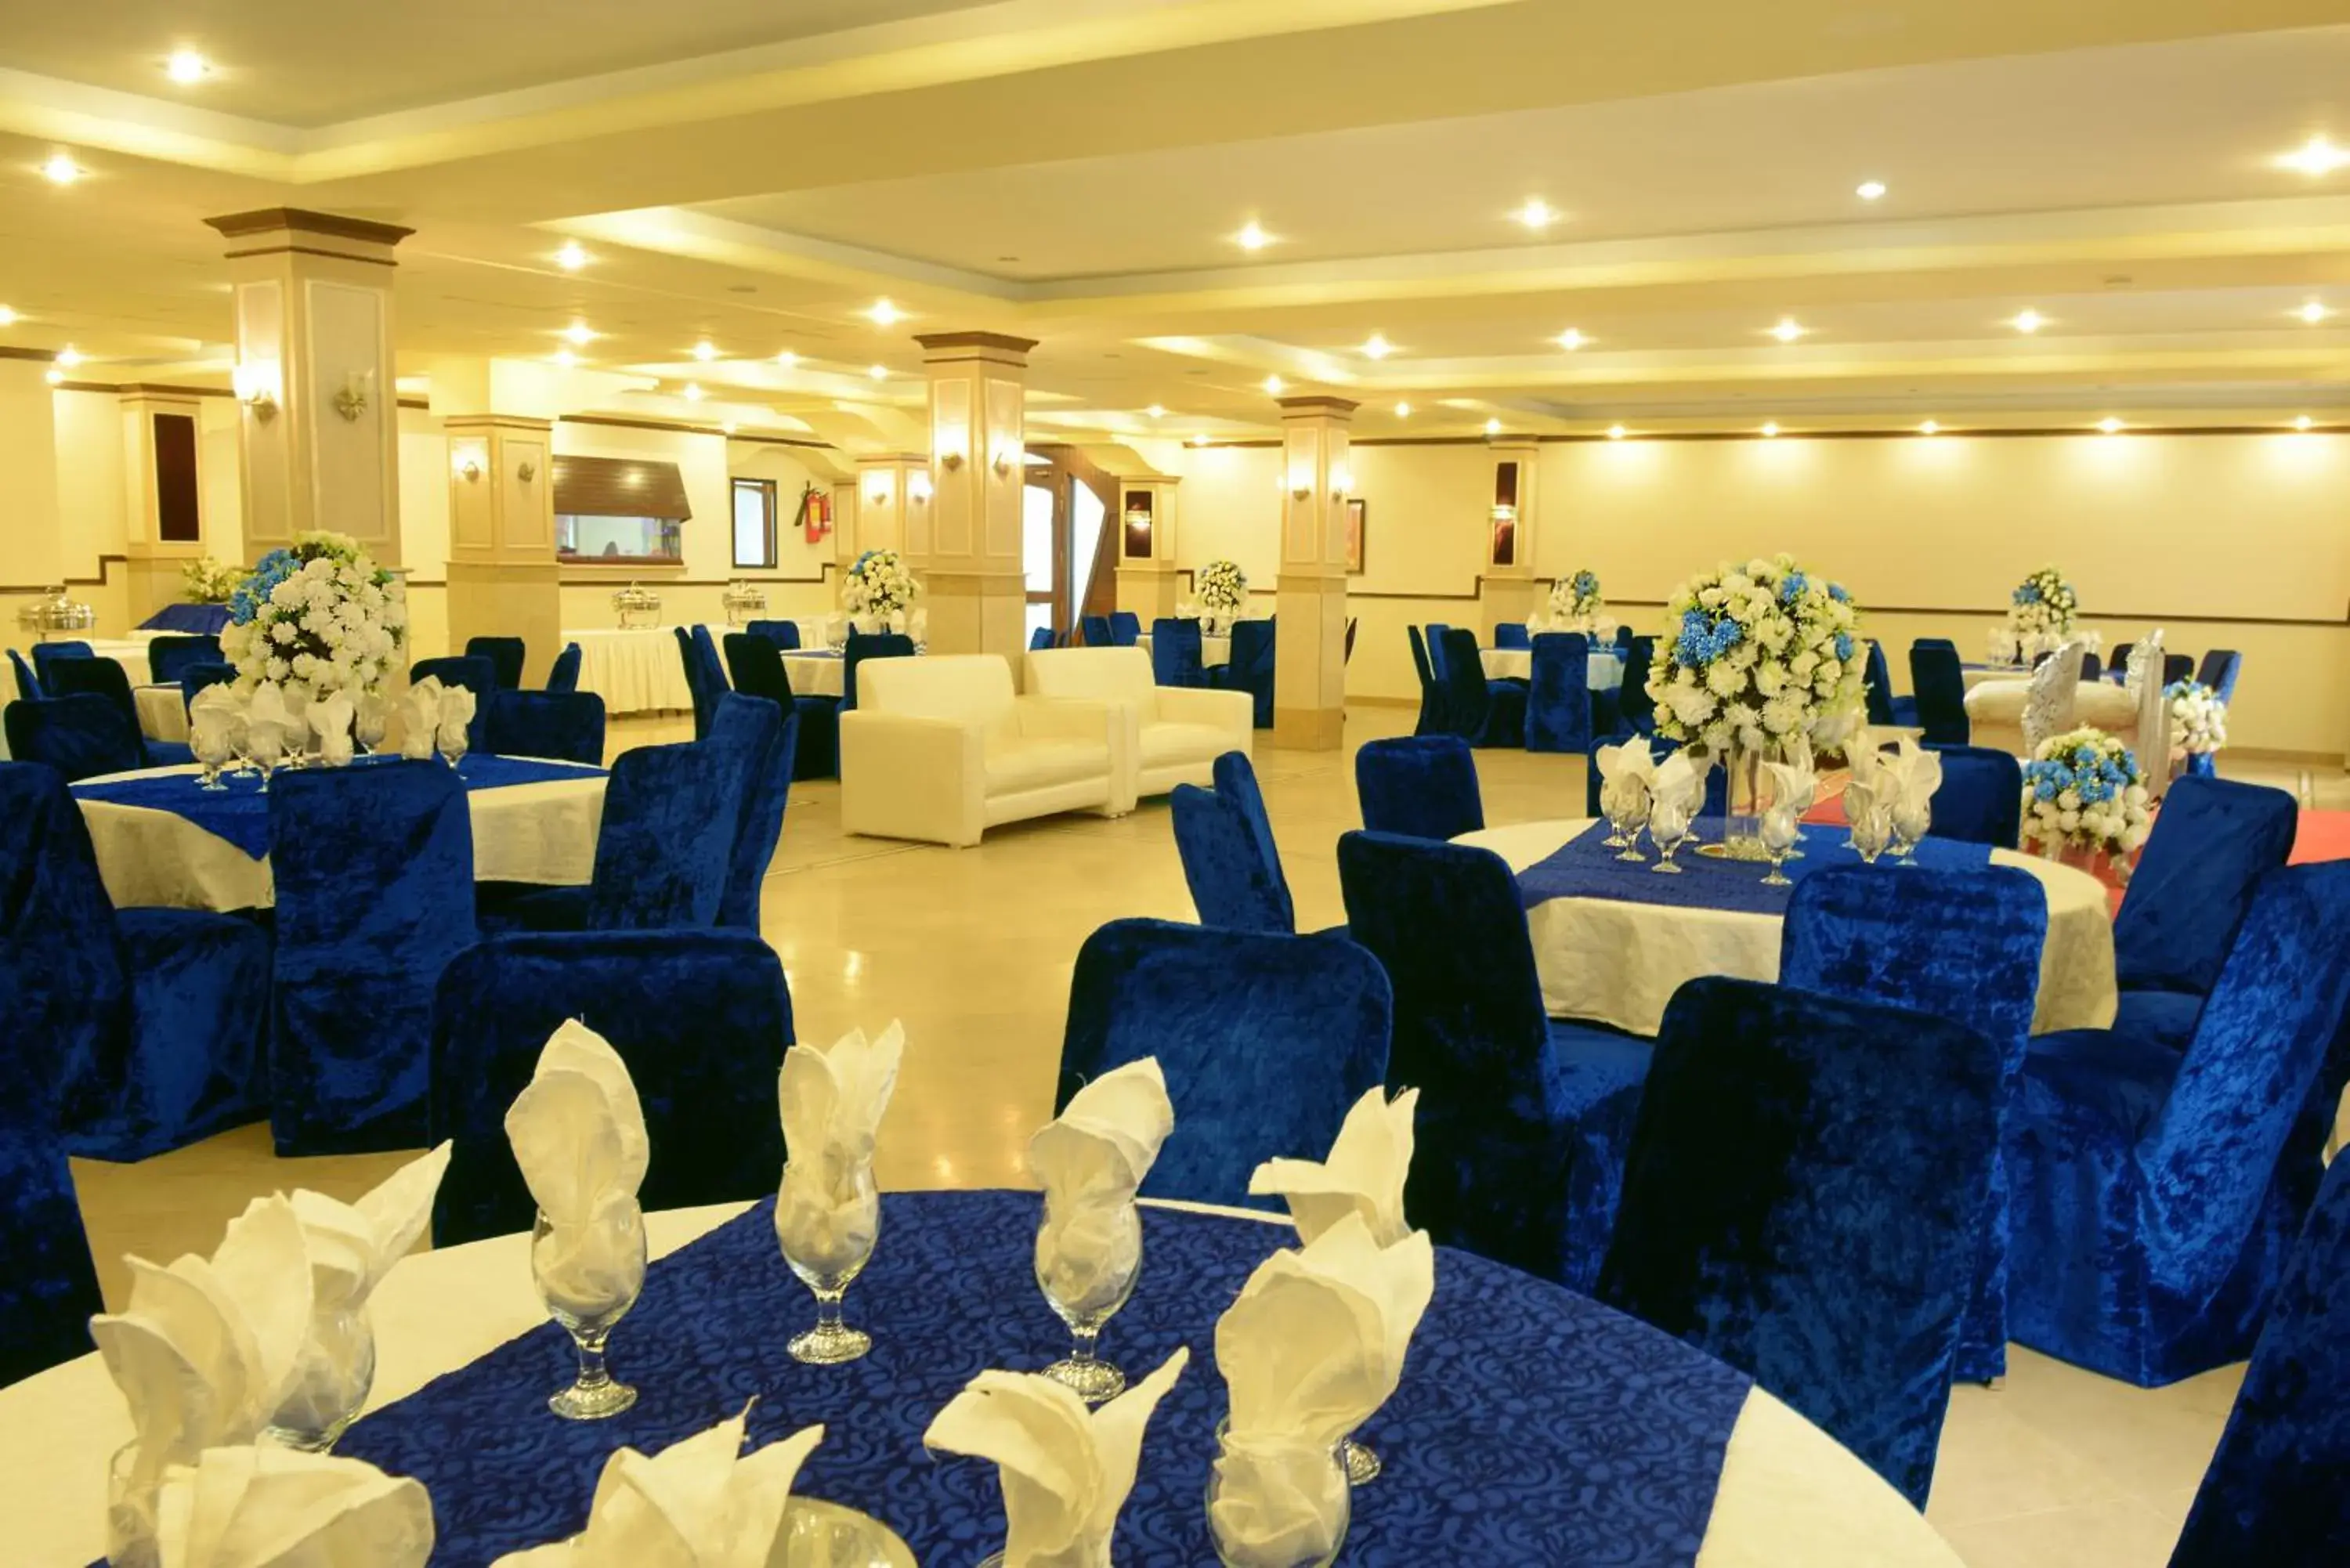 Banquet/Function facilities, Banquet Facilities in Islamabad Regalia Hotel